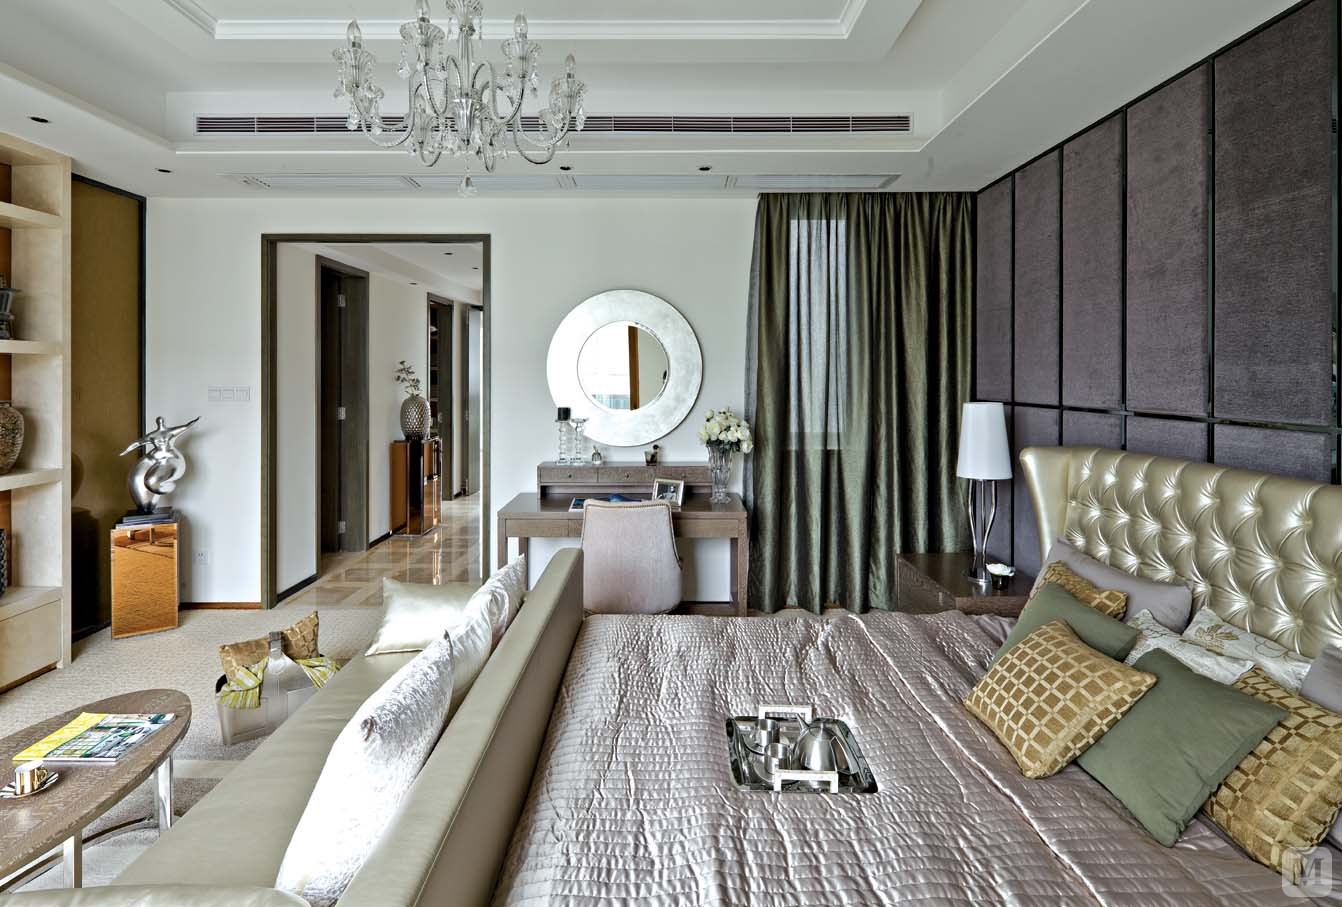 客厅用明快的材质和颜色相结合  打造一个极具现代感而不失奢华的品味空间。时尚与古典元素完美的结合。卧室在运用咖啡色软包，则更强调沉稳和柔和，透露一种华美的气质。